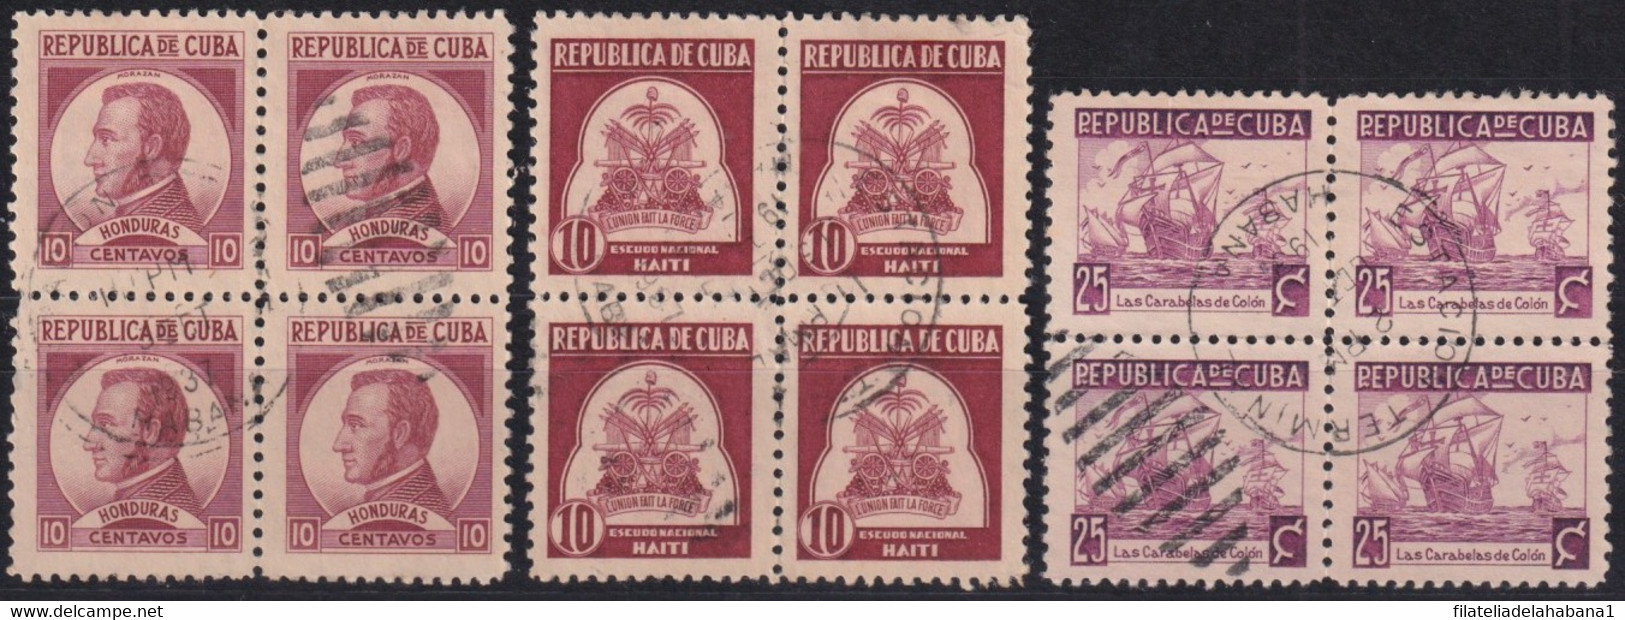 1937-442 CUBA REPUBLICA 1937 WRITTER & ARTIST CANCELLED BLOCK 4. - Gebruikt